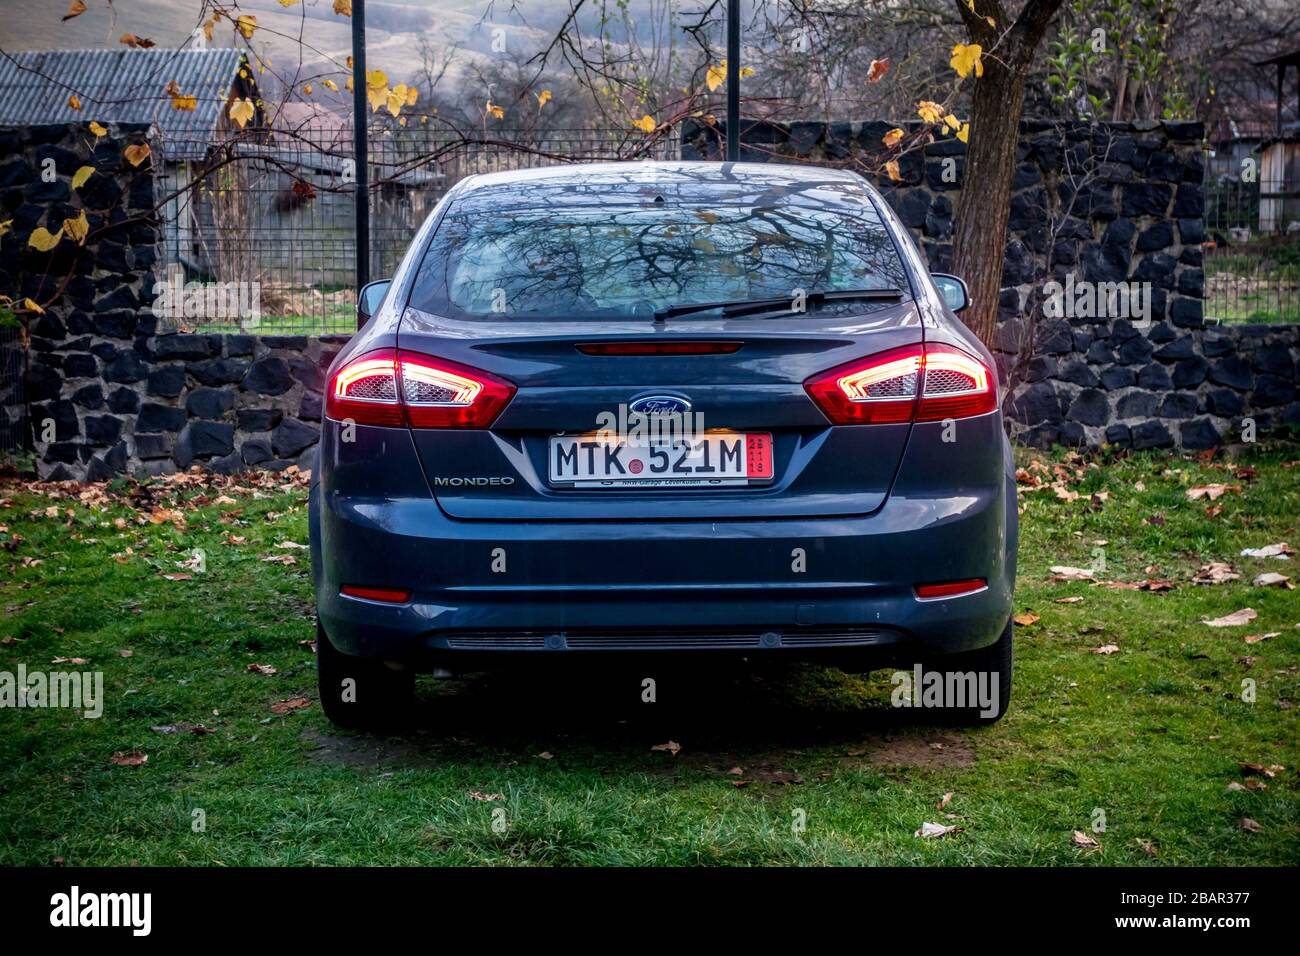 Magnifique berline Ford Mondeo MK 4 avec beaucoup d'équipement supplémentaire. Séance photo dans un parking près d'une forêt brune d'automne. Couleur grise avec chrome Banque D'Images